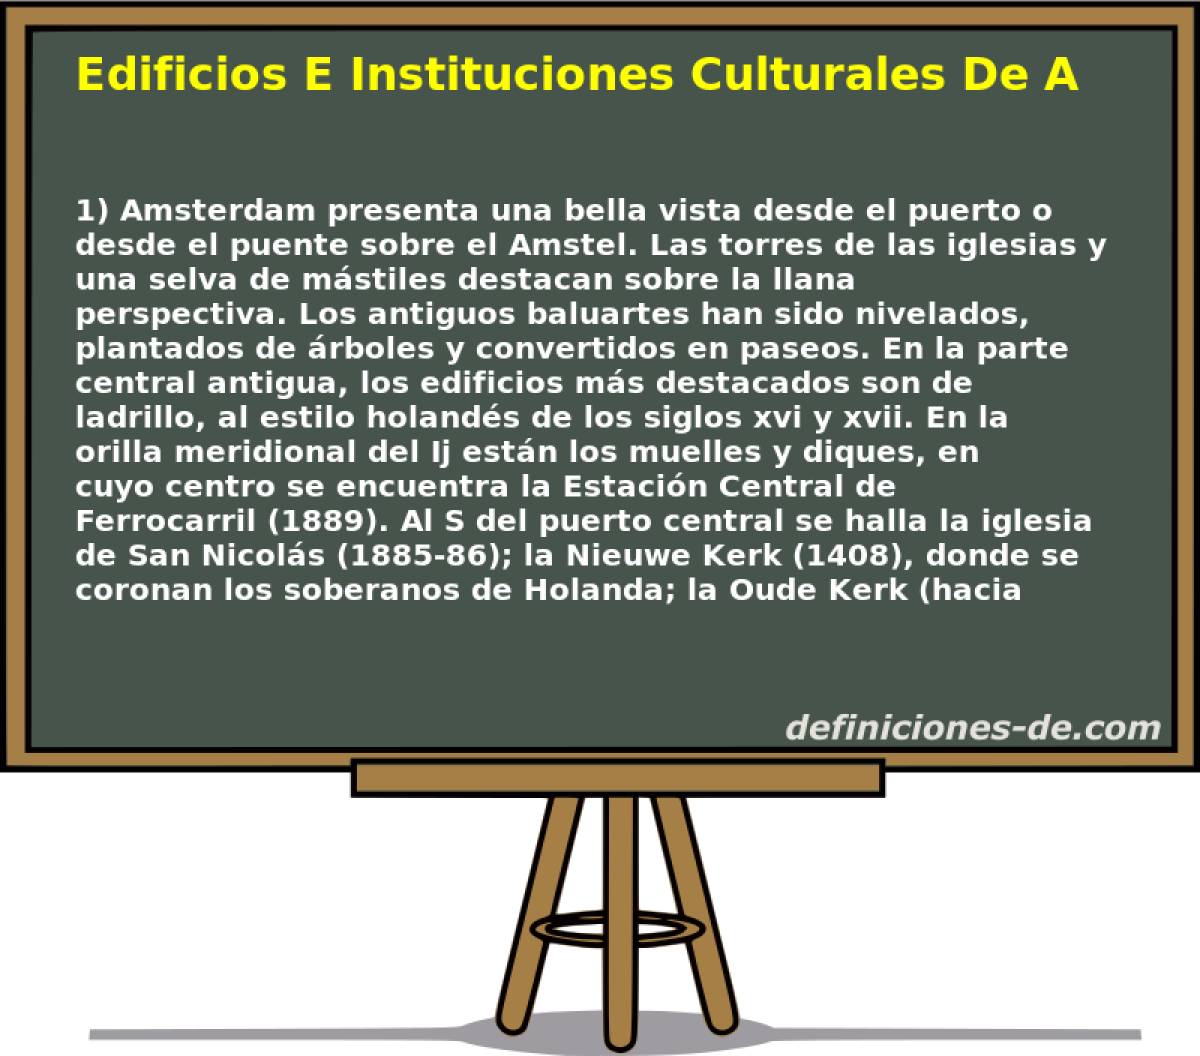 Edificios E Instituciones Culturales De Amsterdam 